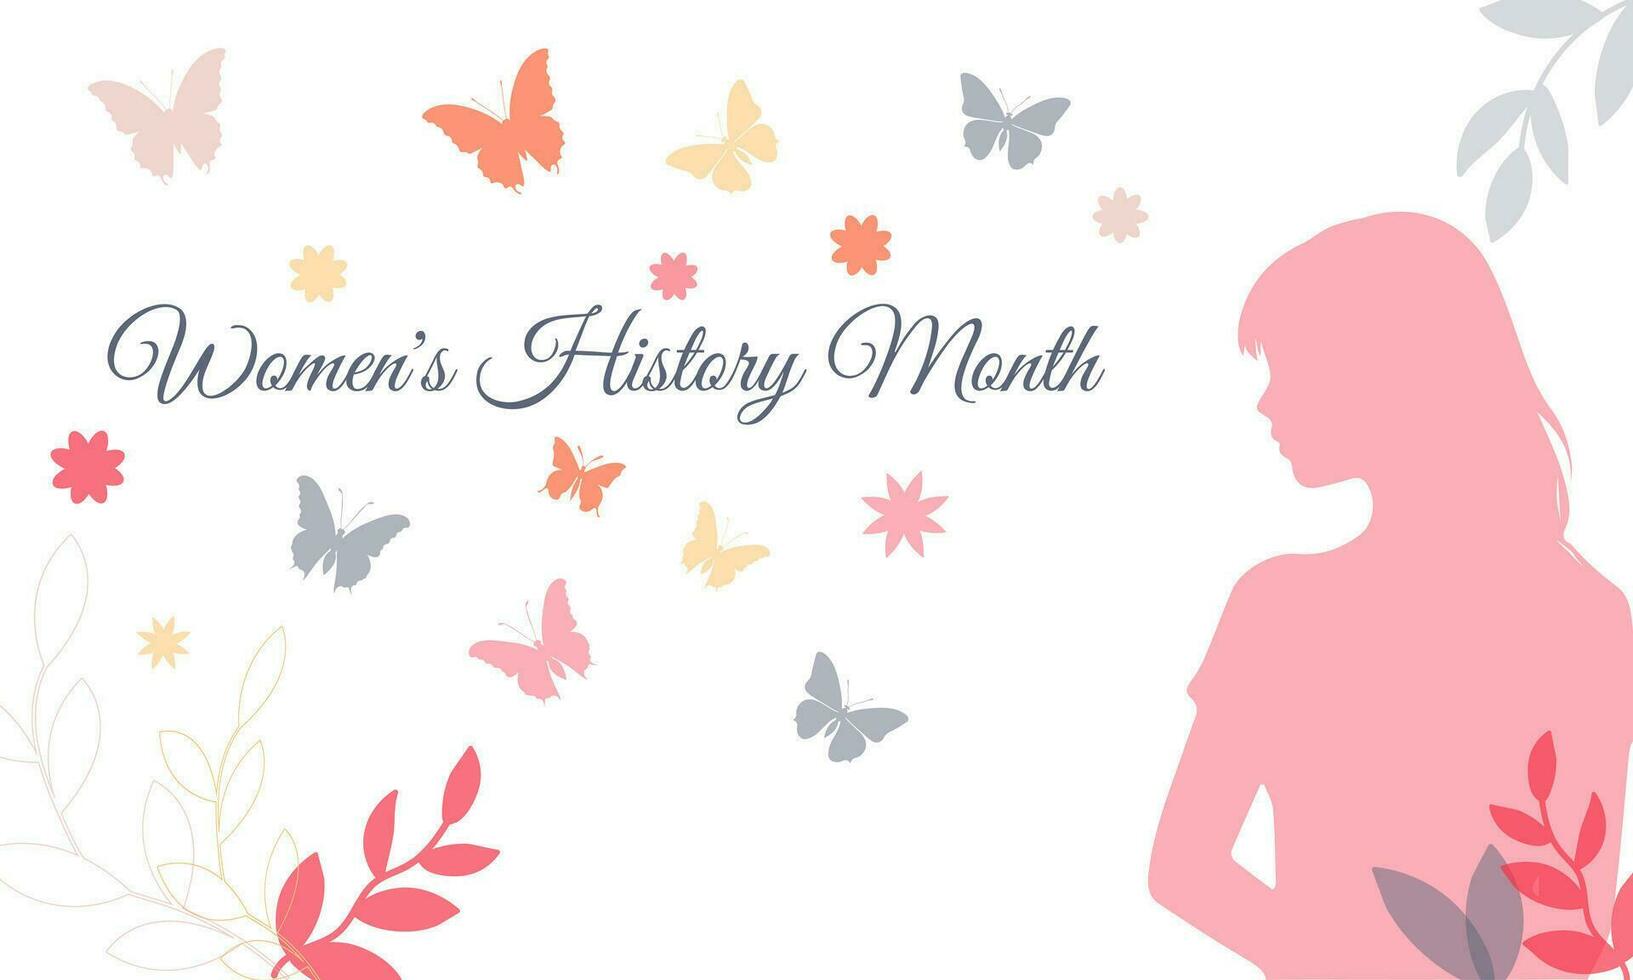 kaart voor Internationale vrouwen dag, vrouwen geschiedenis maand vector